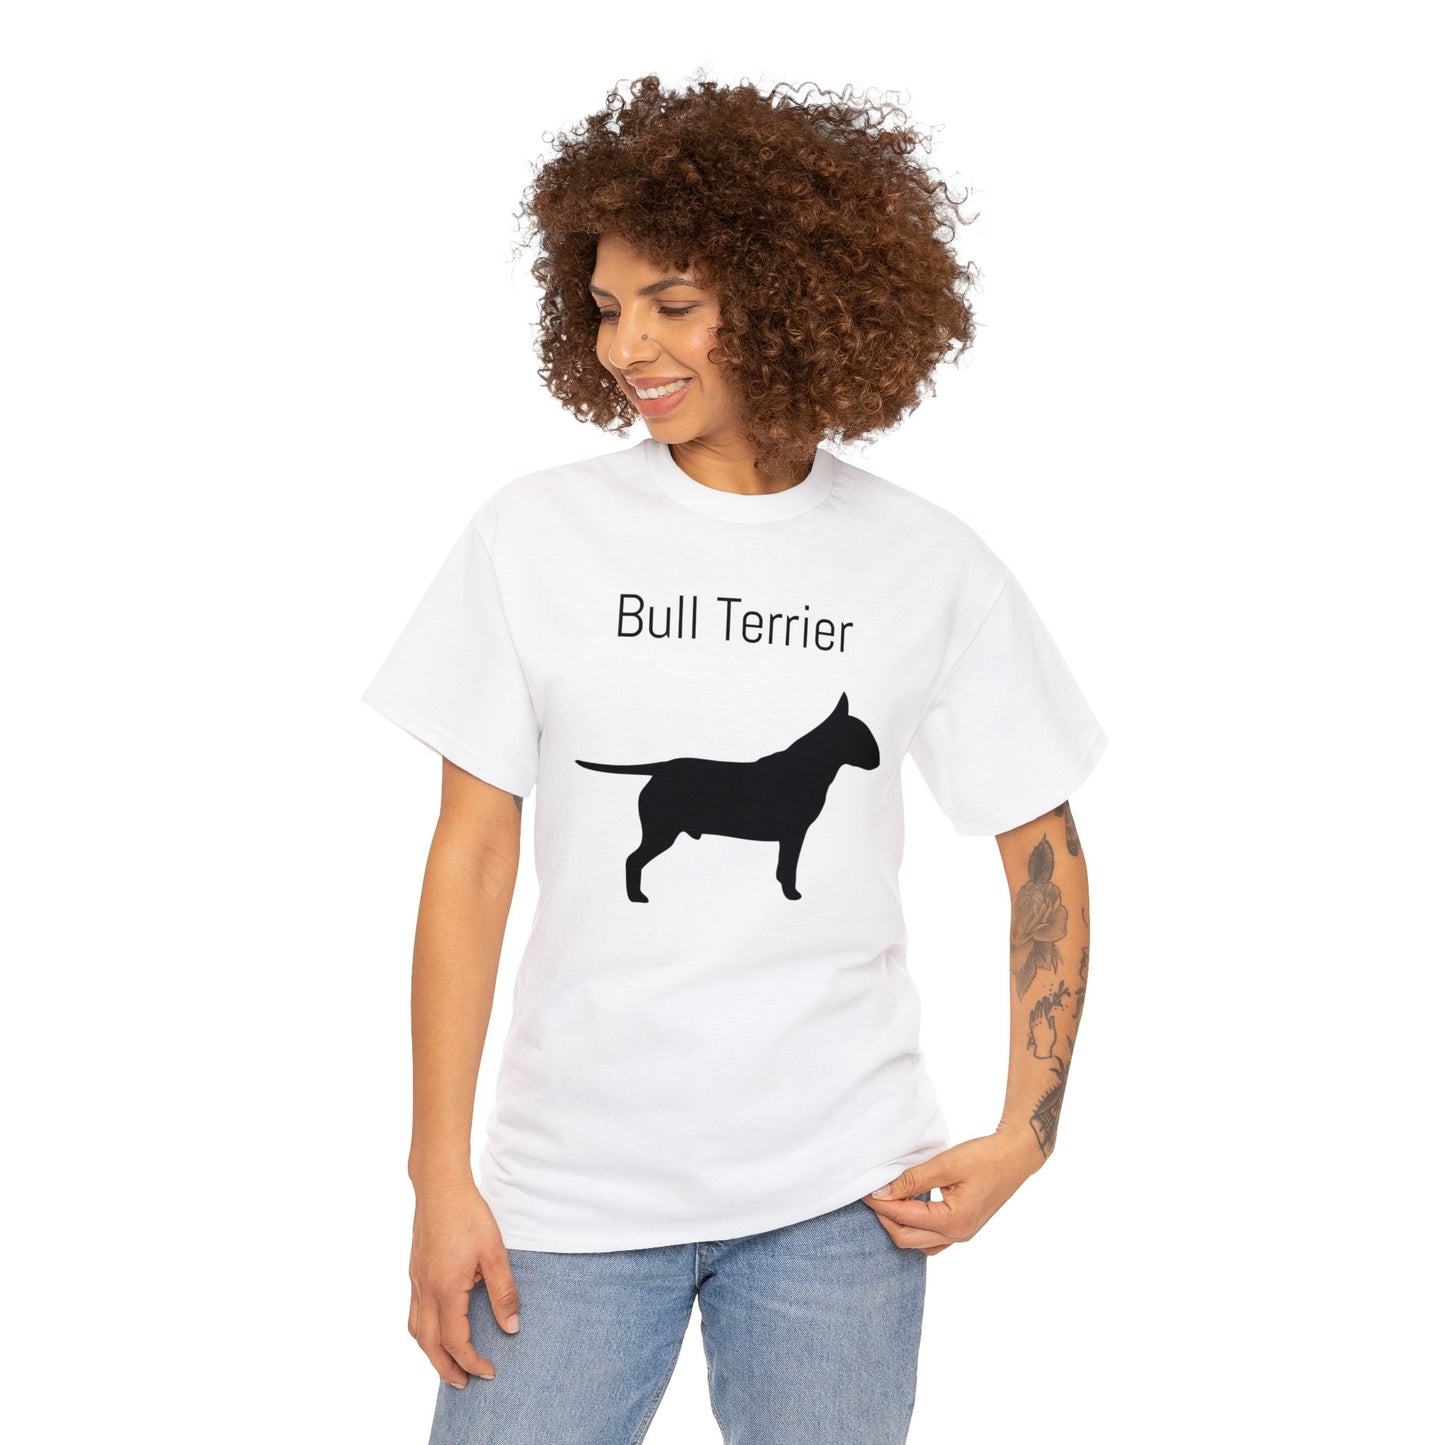 Bull Terrier T-Shirt, Bully Silhouette Tee